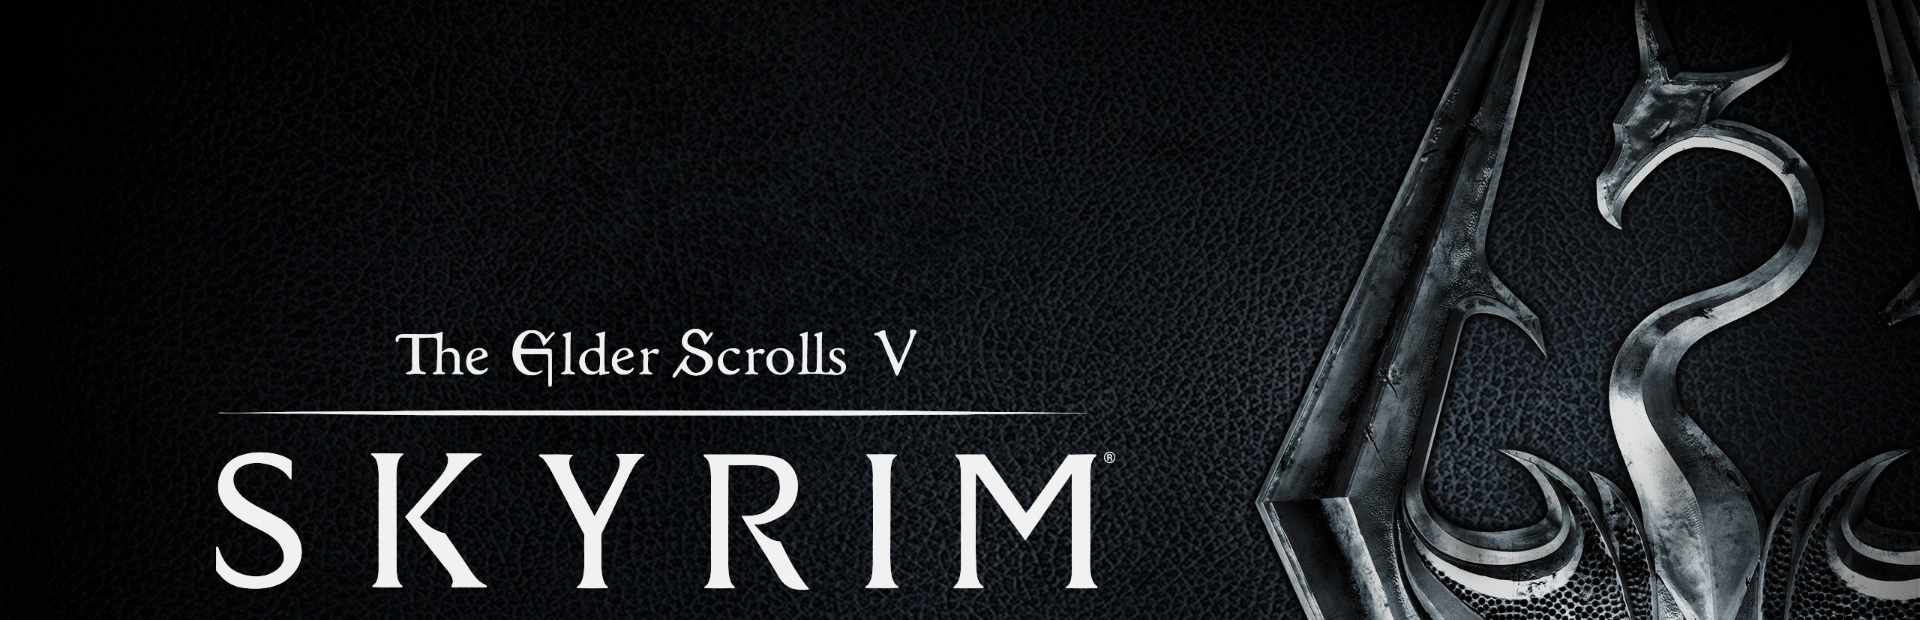 The Elder Scrolls V Skyrim6.banner2